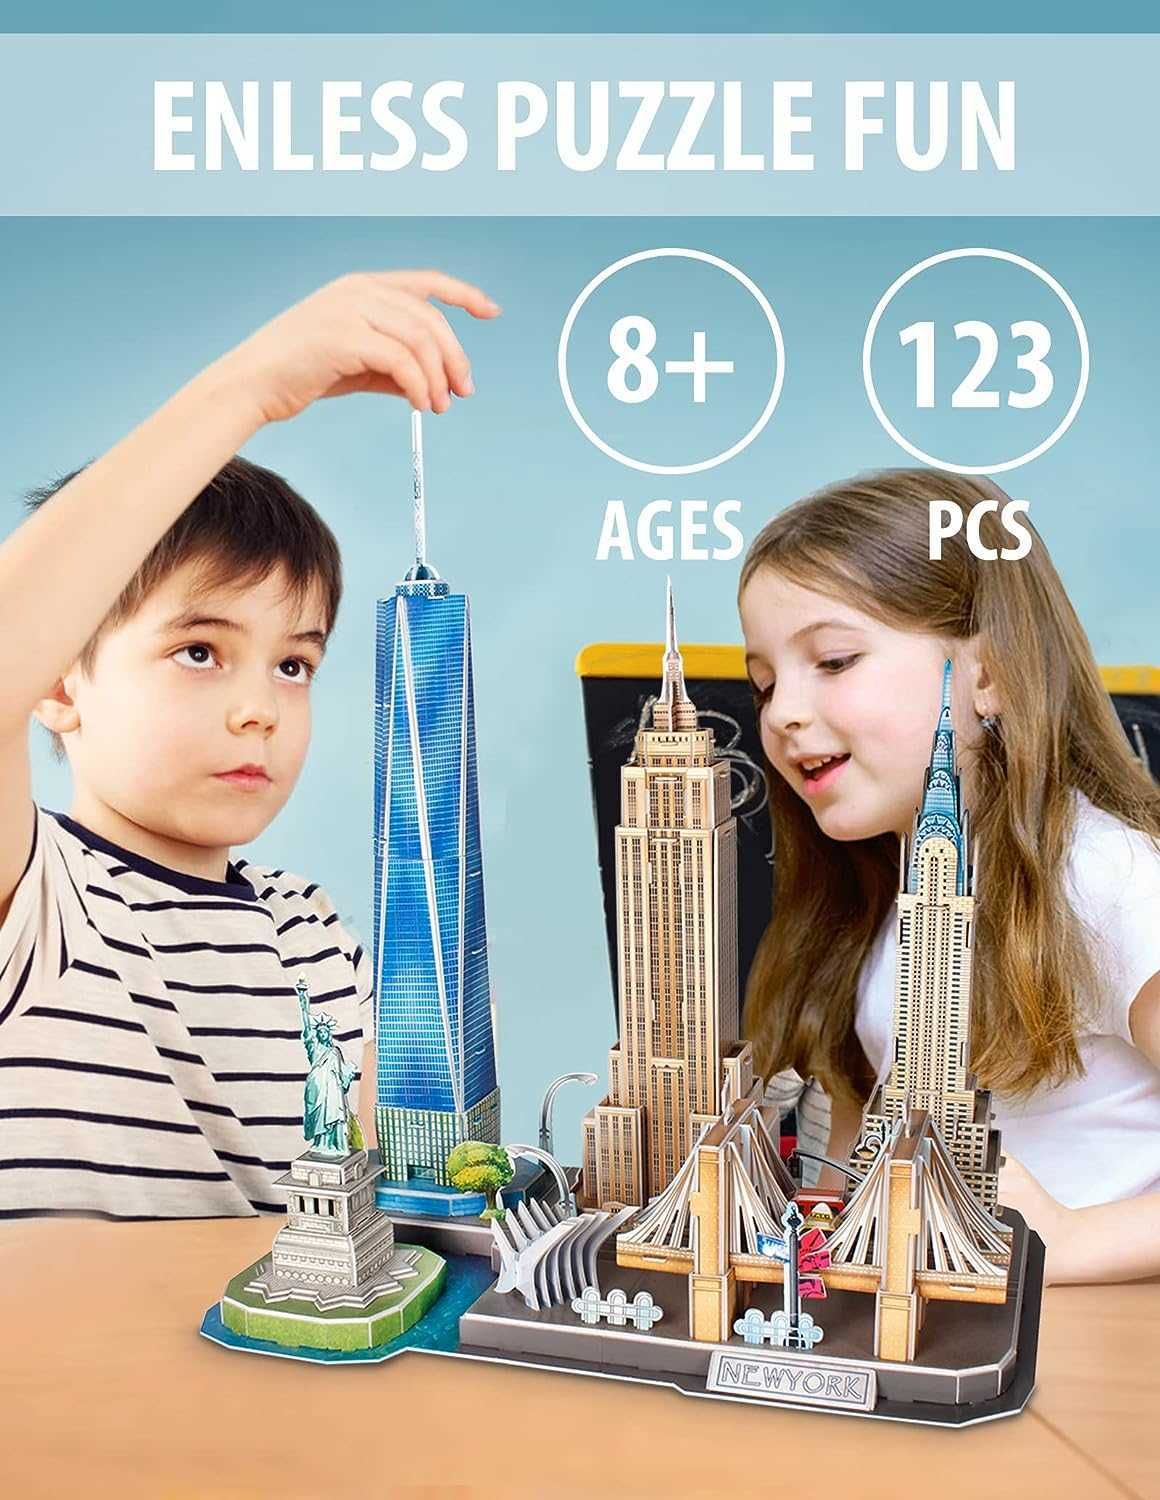 3D Puzzles 3D Puzzle Puzzles For Kids Ages 8 10 New York City STEM